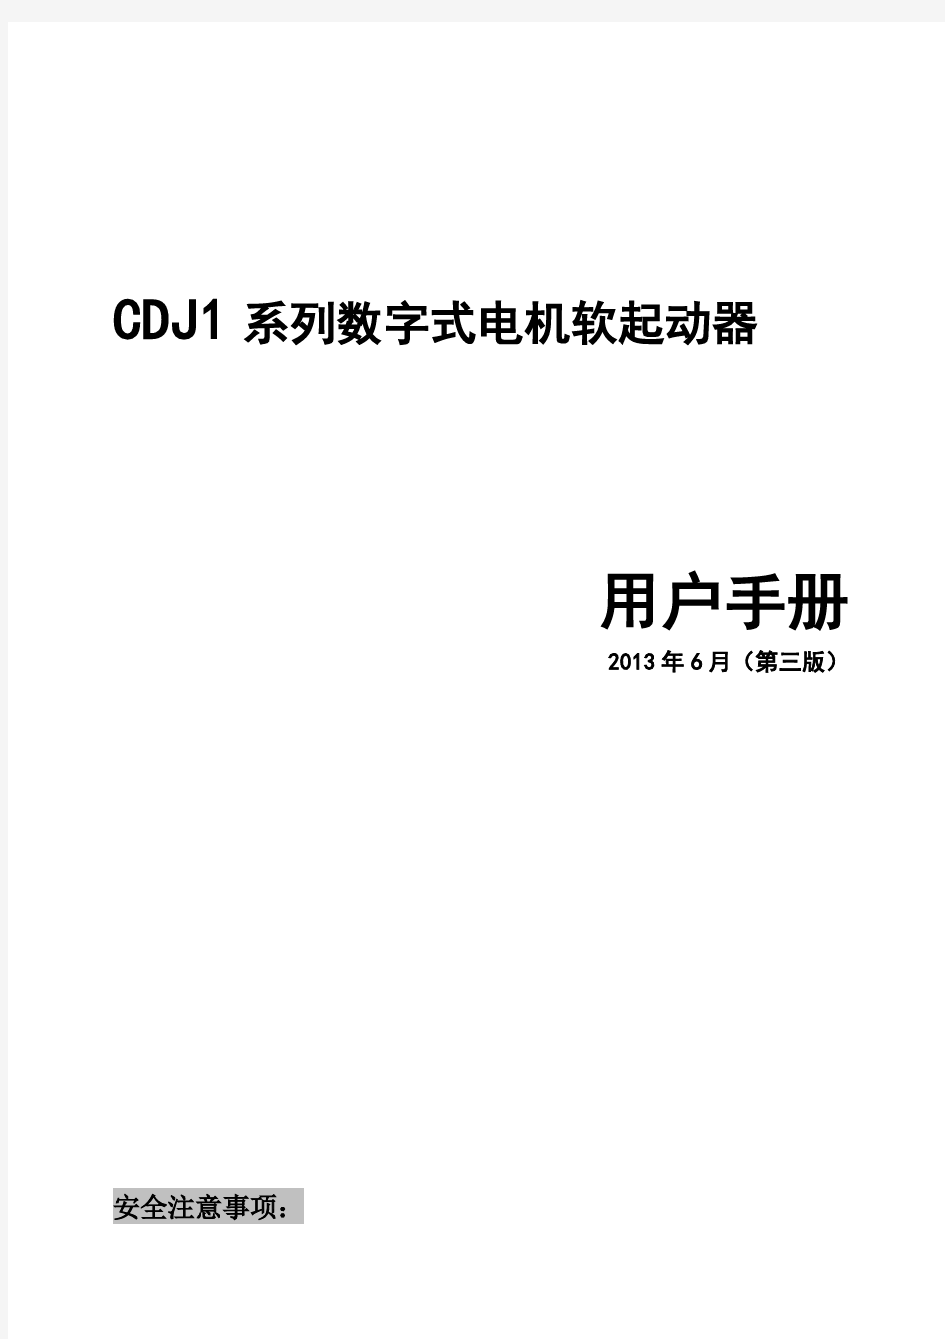 德力西新程序 CDJ1系列数字式电机软起动器说明书